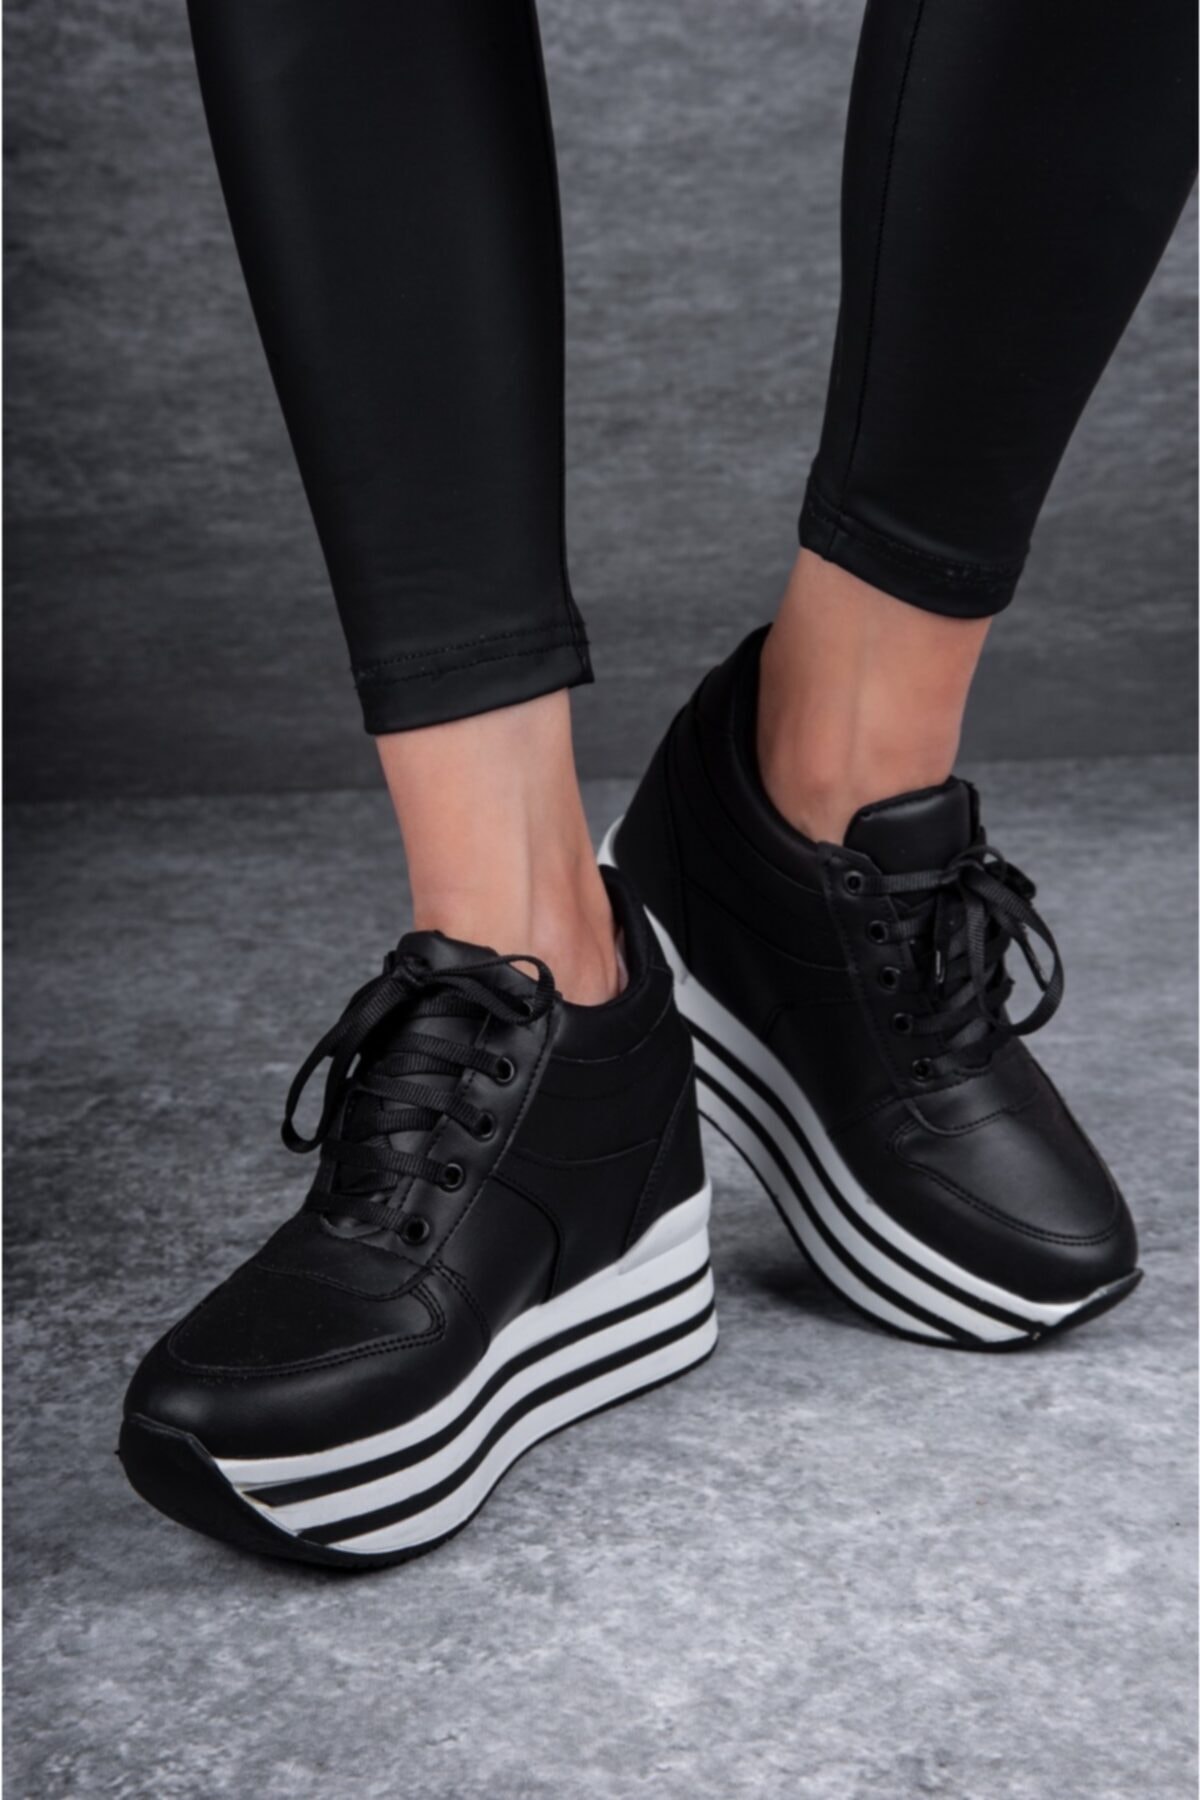 Tarz Topuklar Kadın Fermuar Detaylı Gizli Dolgu Topuklu Siyah Spor Ayakkabı